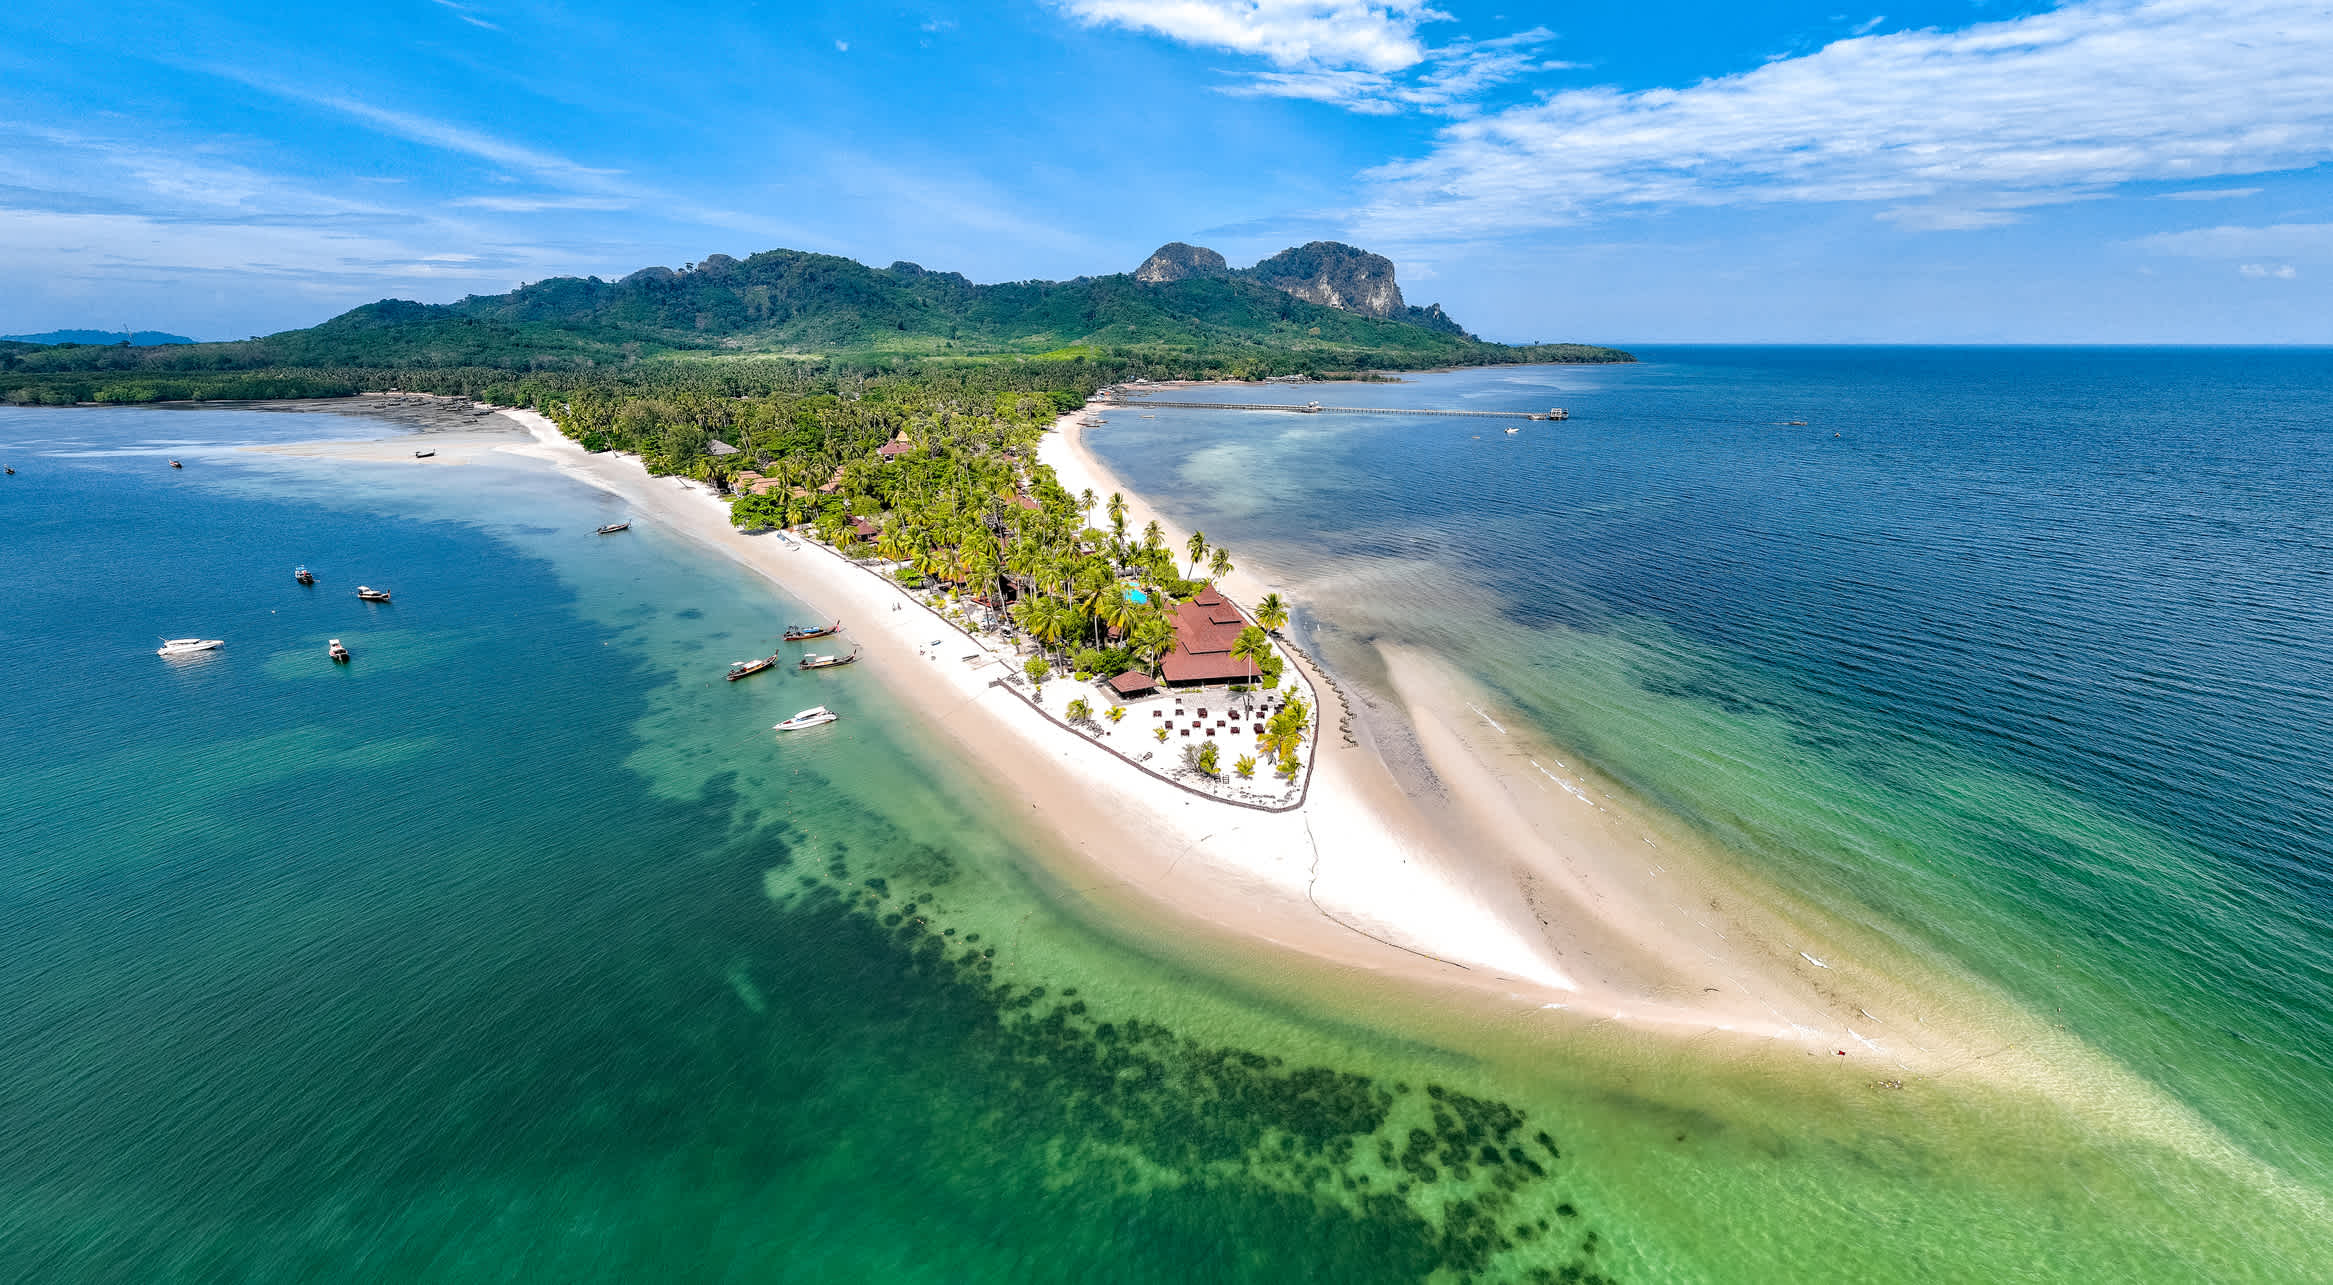 Insel Koh Mook von oben gesehen als Sinnbild für Inselhopping in Thailand